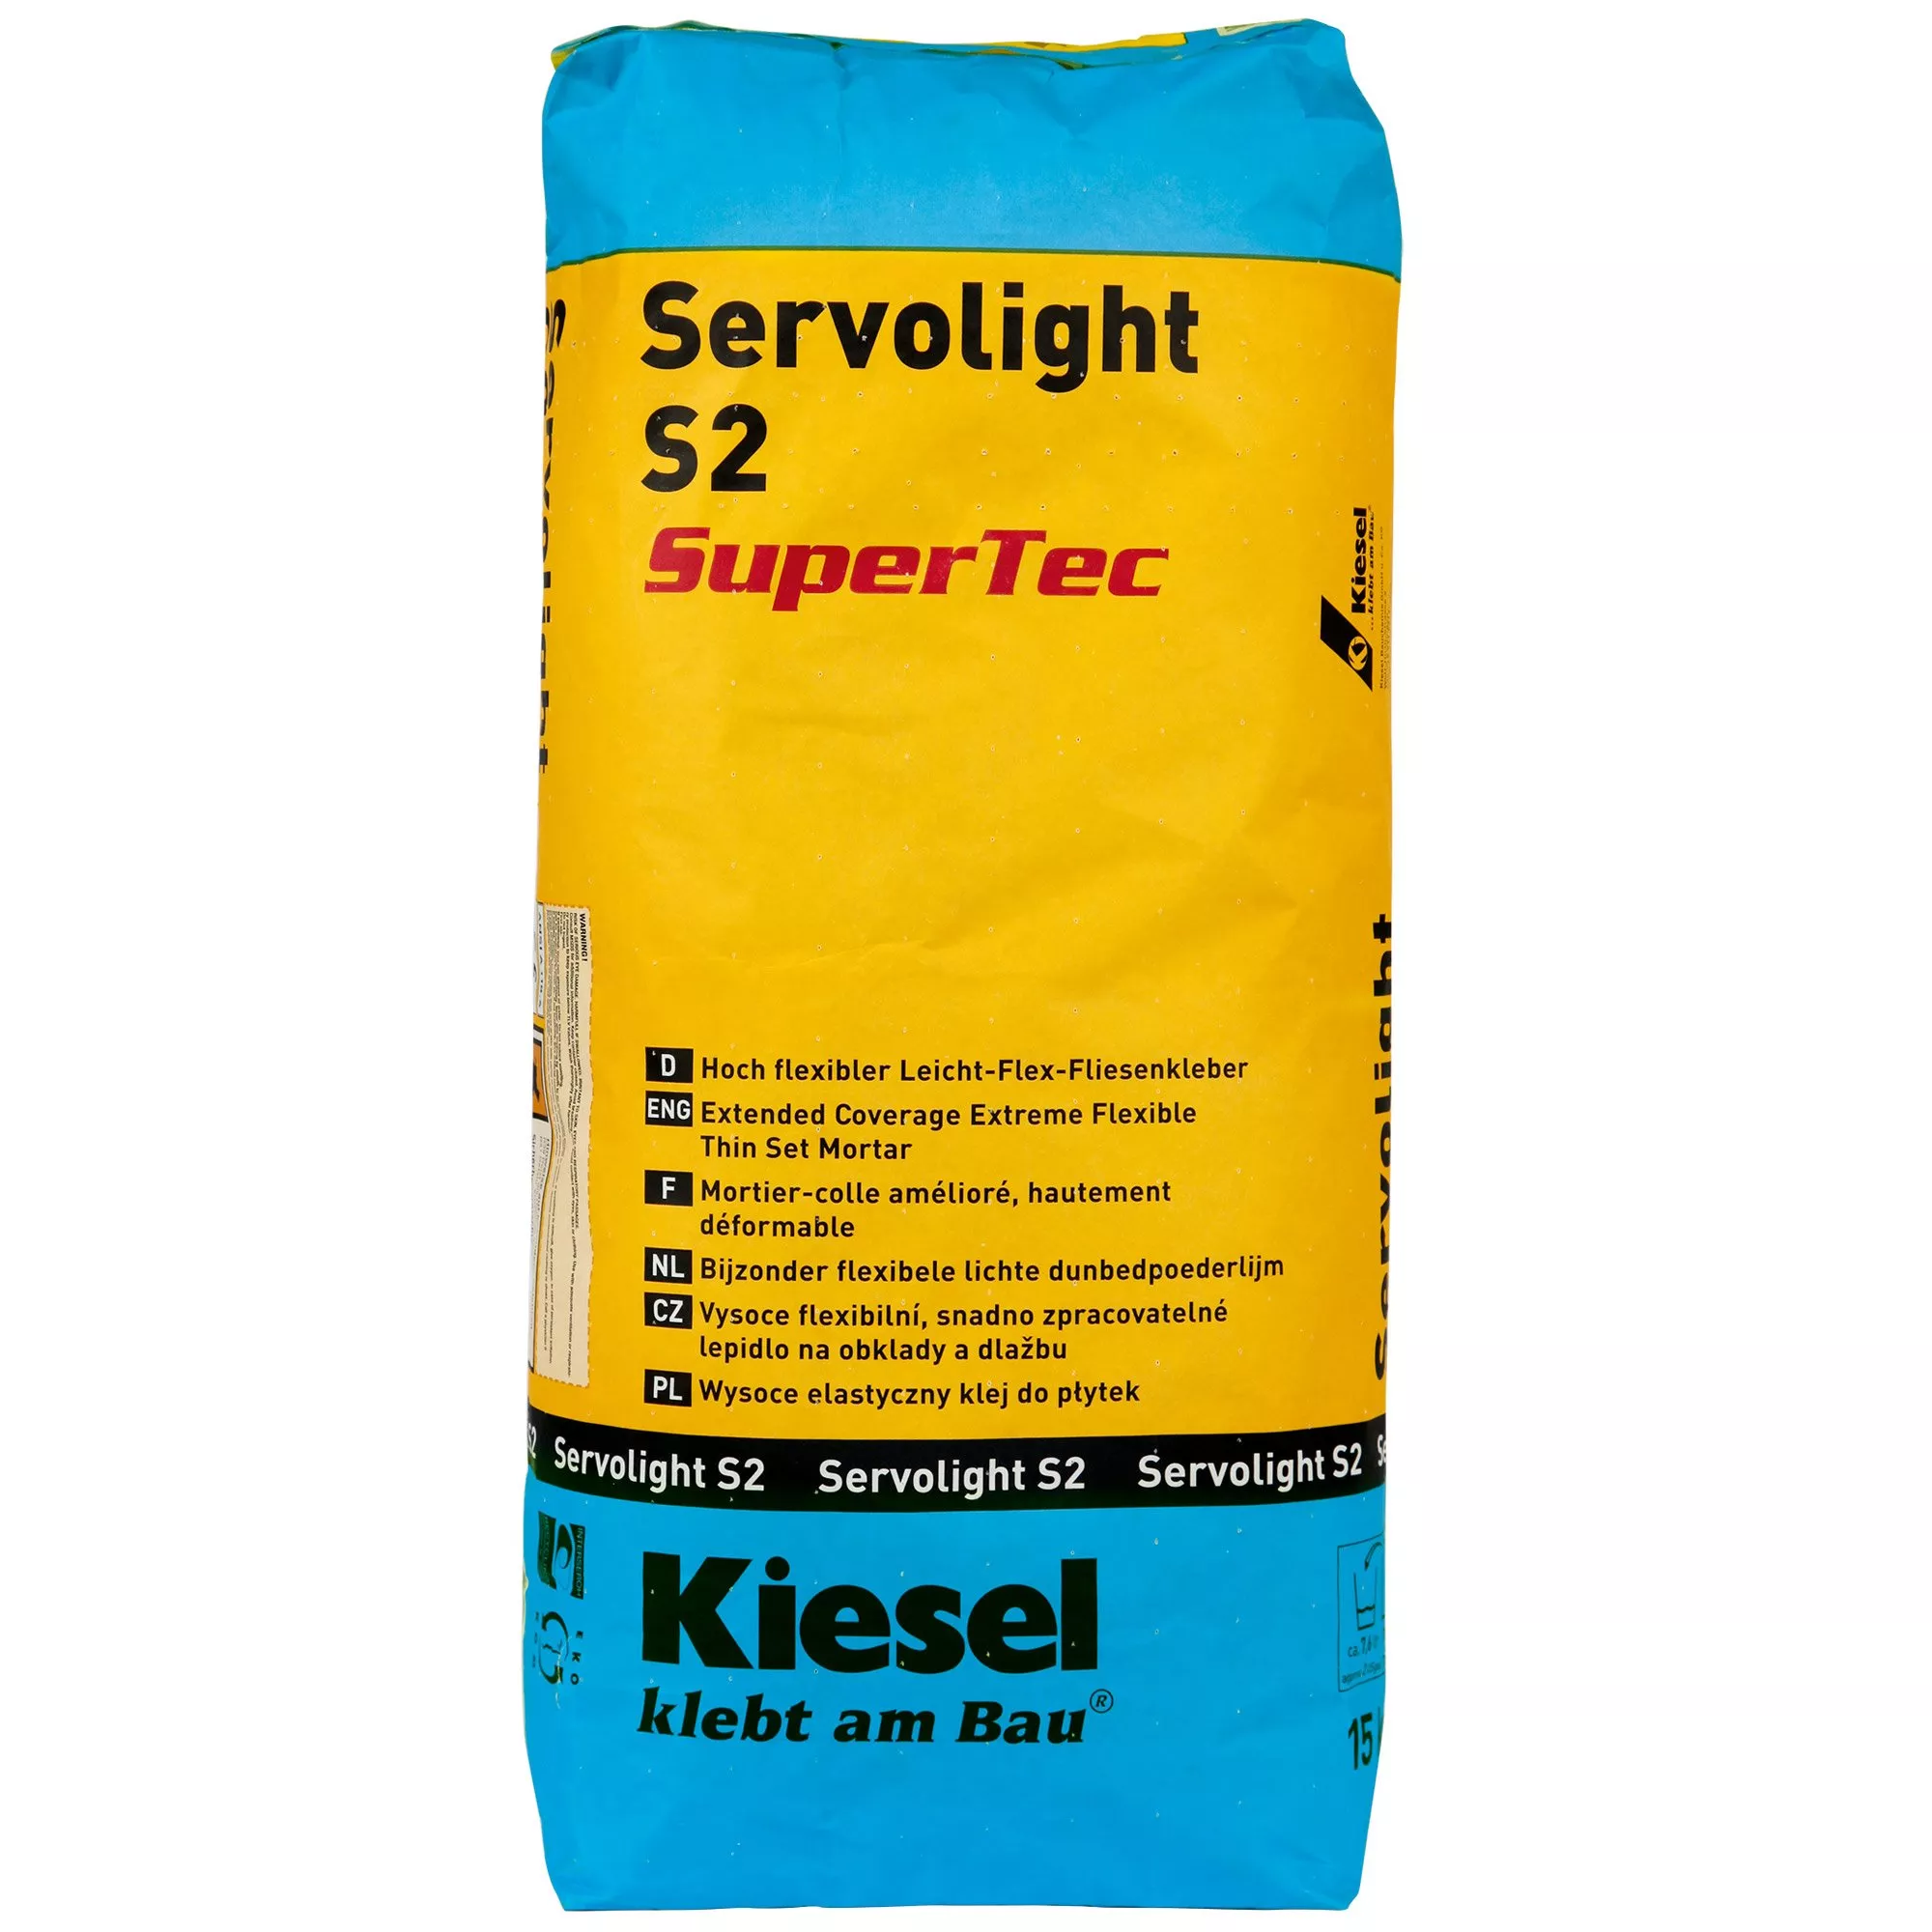 Kiesel Servolight S2 SuperTec - Adesivo Per Piastrelle Ad Alta Flessibilità E Flessibilità (15KG)